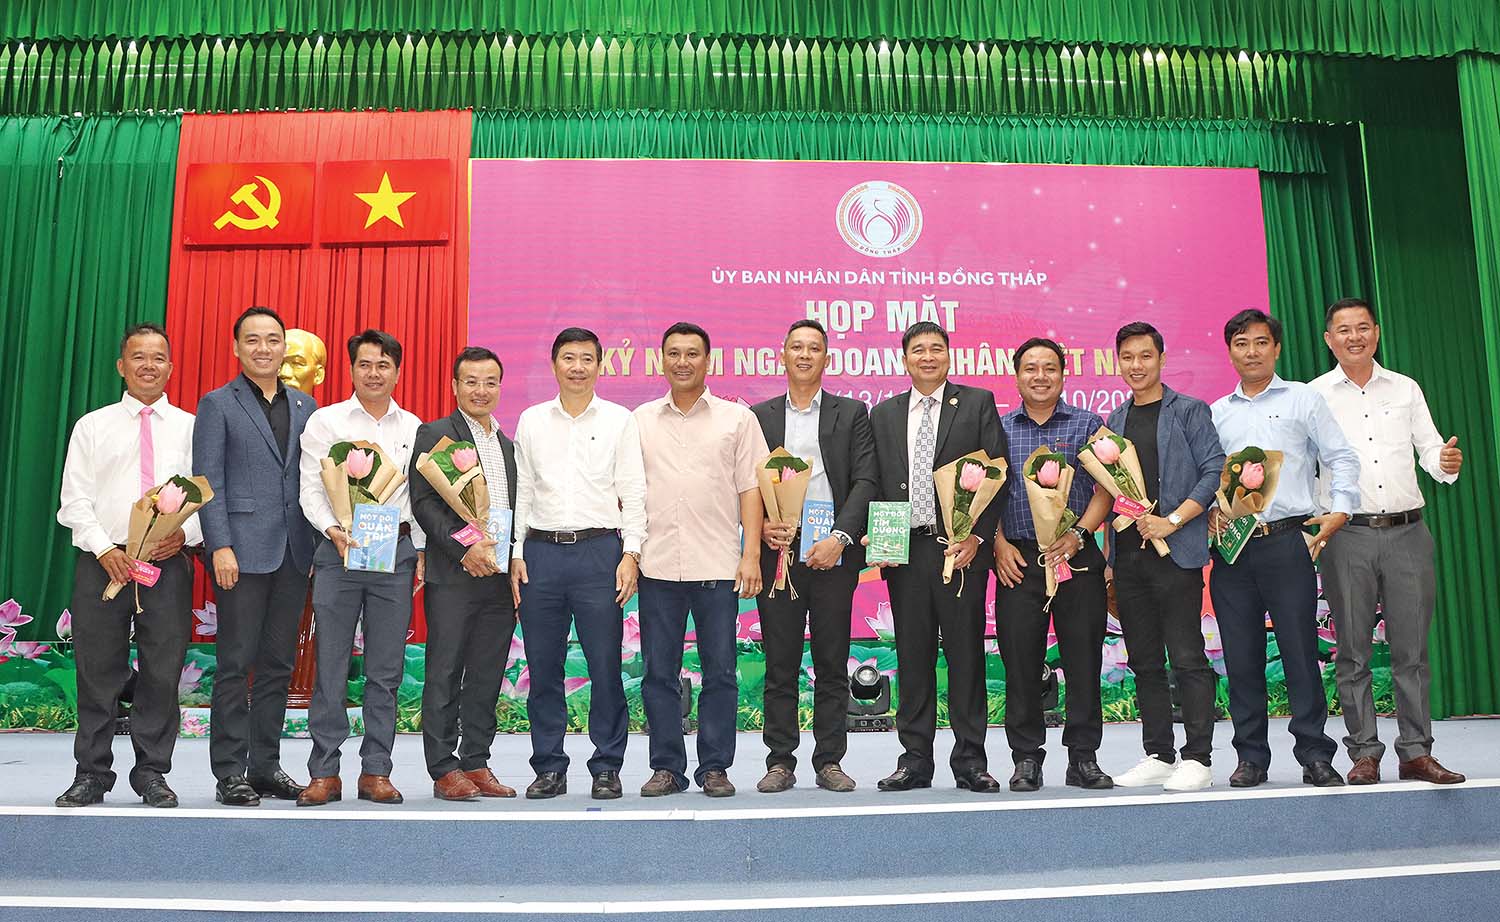 Chủ tịch UBND tỉnh Đồng Tháp Phạm Thiện Nghĩa (thứ 5 từ trái sang) vinh danh và chúc mừng các doanh nghiệp tiêu biểu tỉnh Đồng Tháp năm 2022